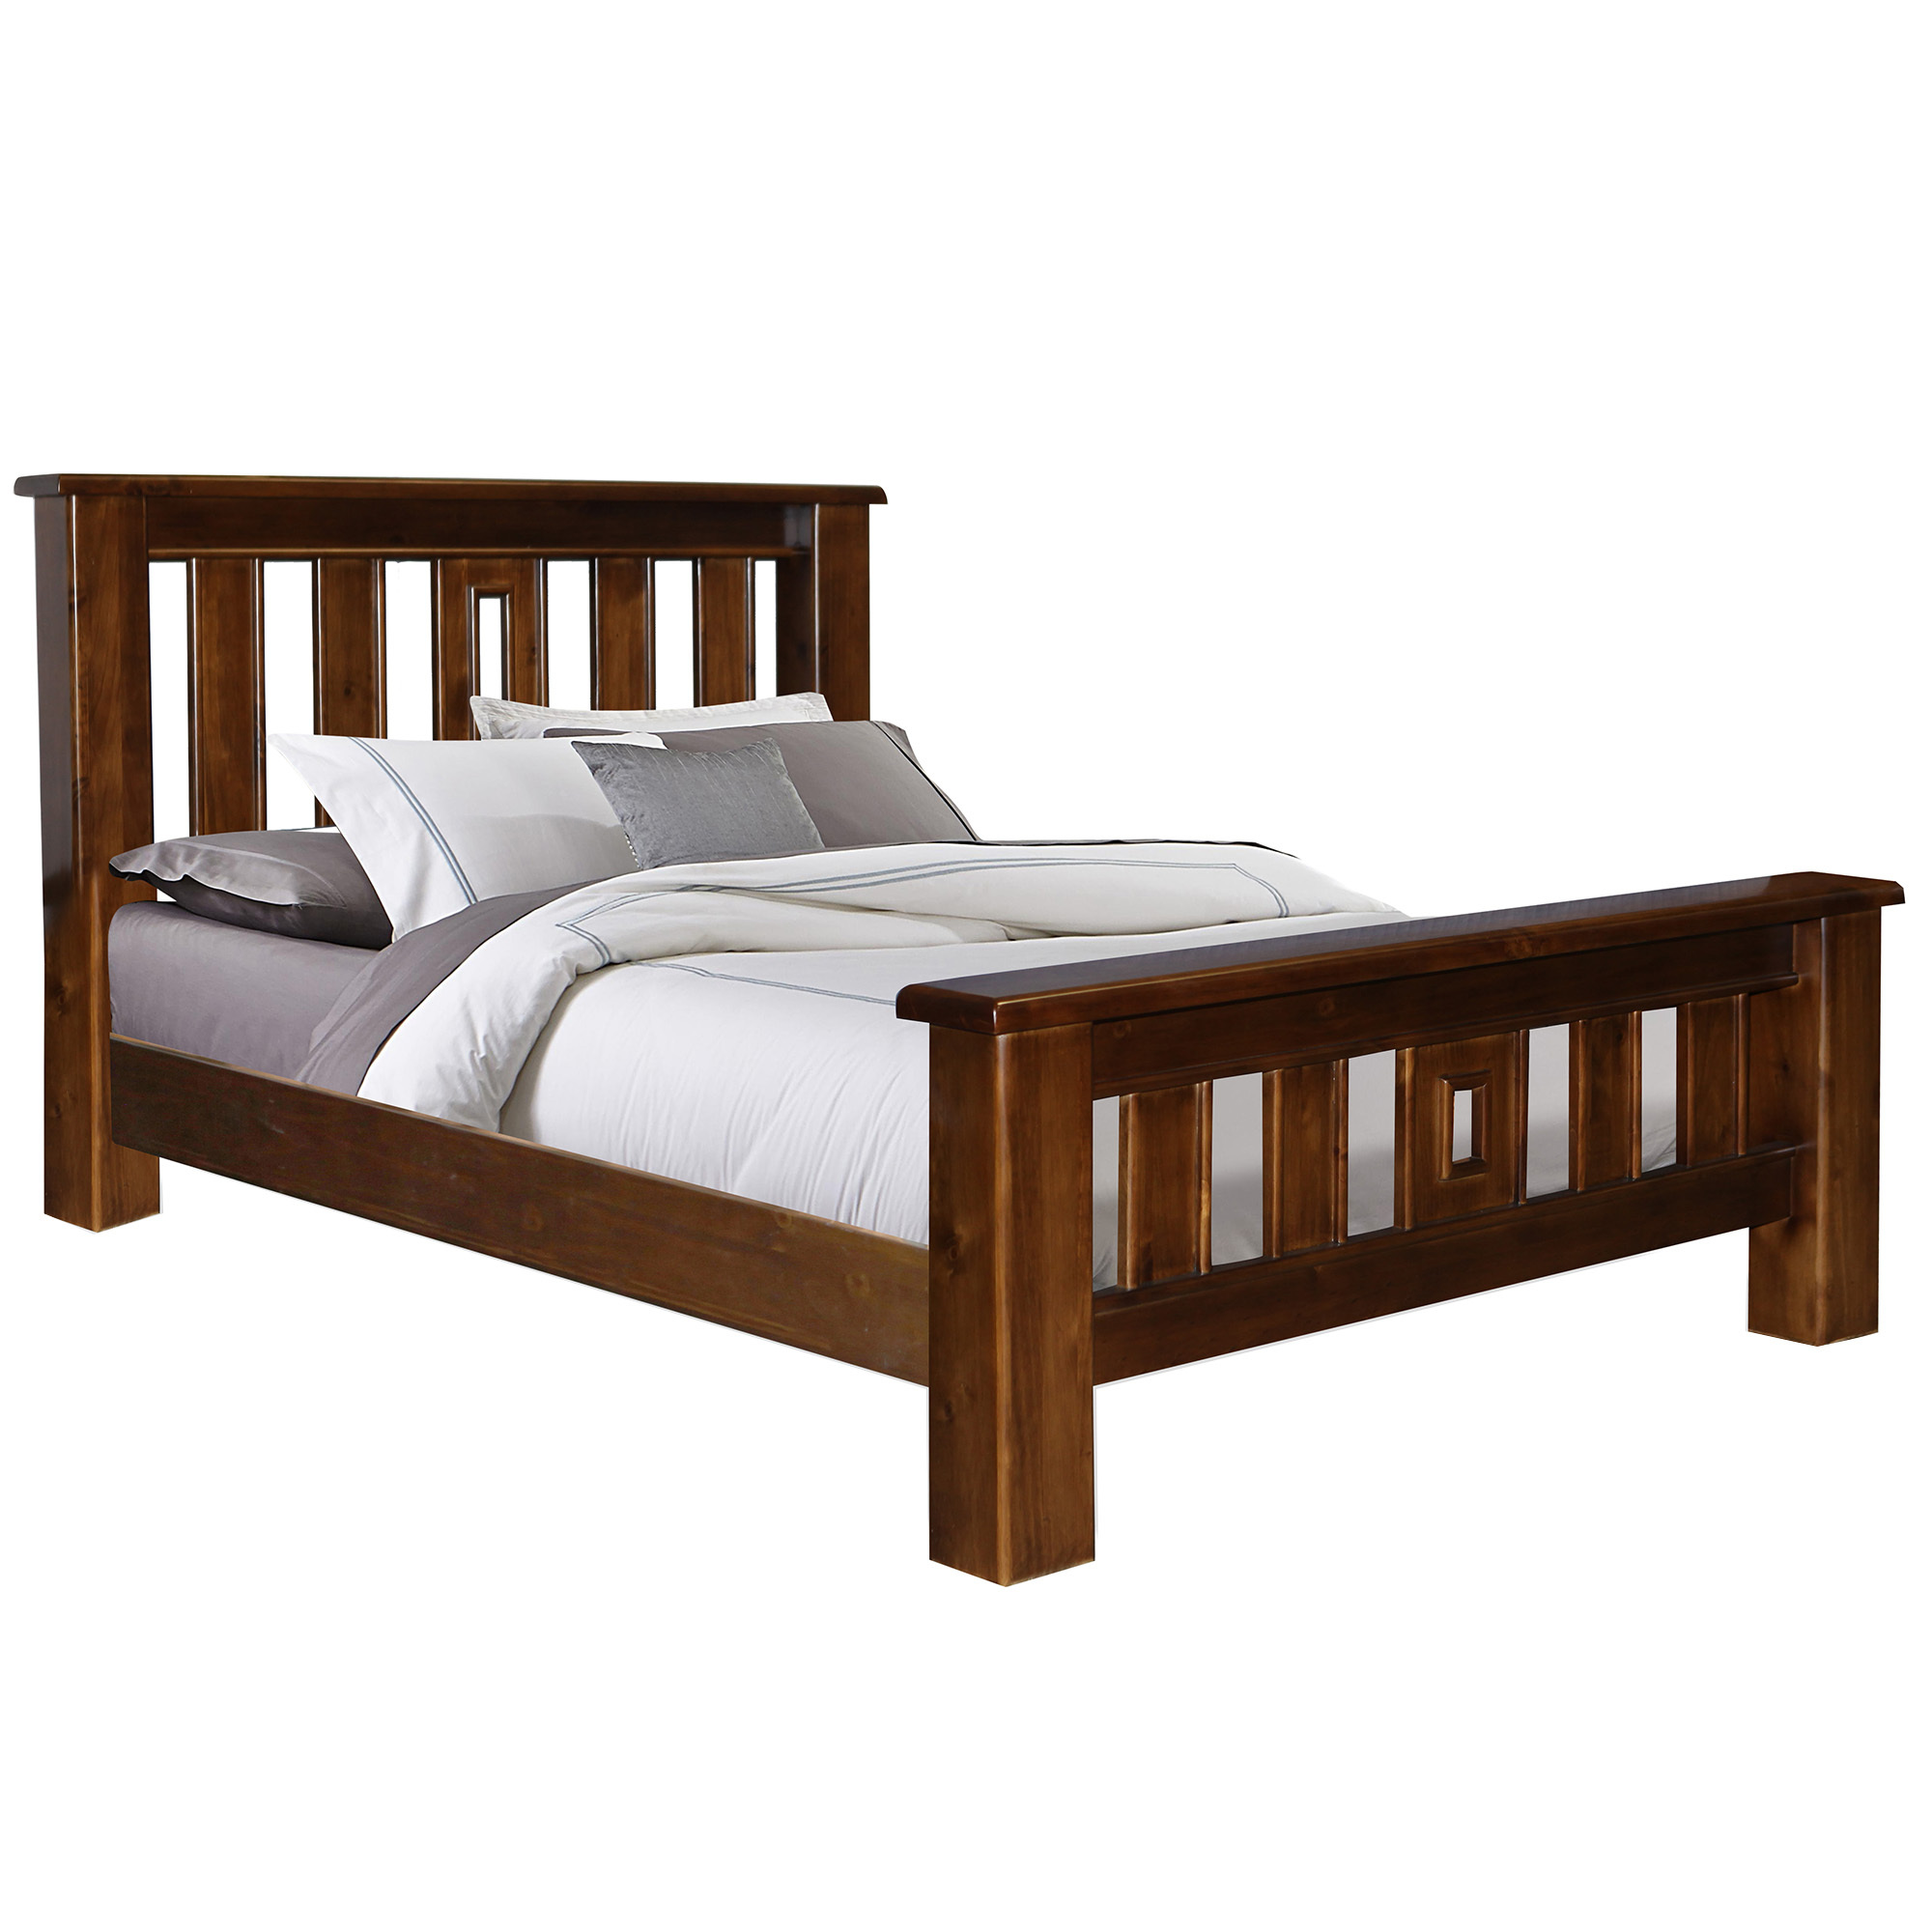 Dark Brown Merlin Wooden Bed, Dark Brown Wooden Bed Frame